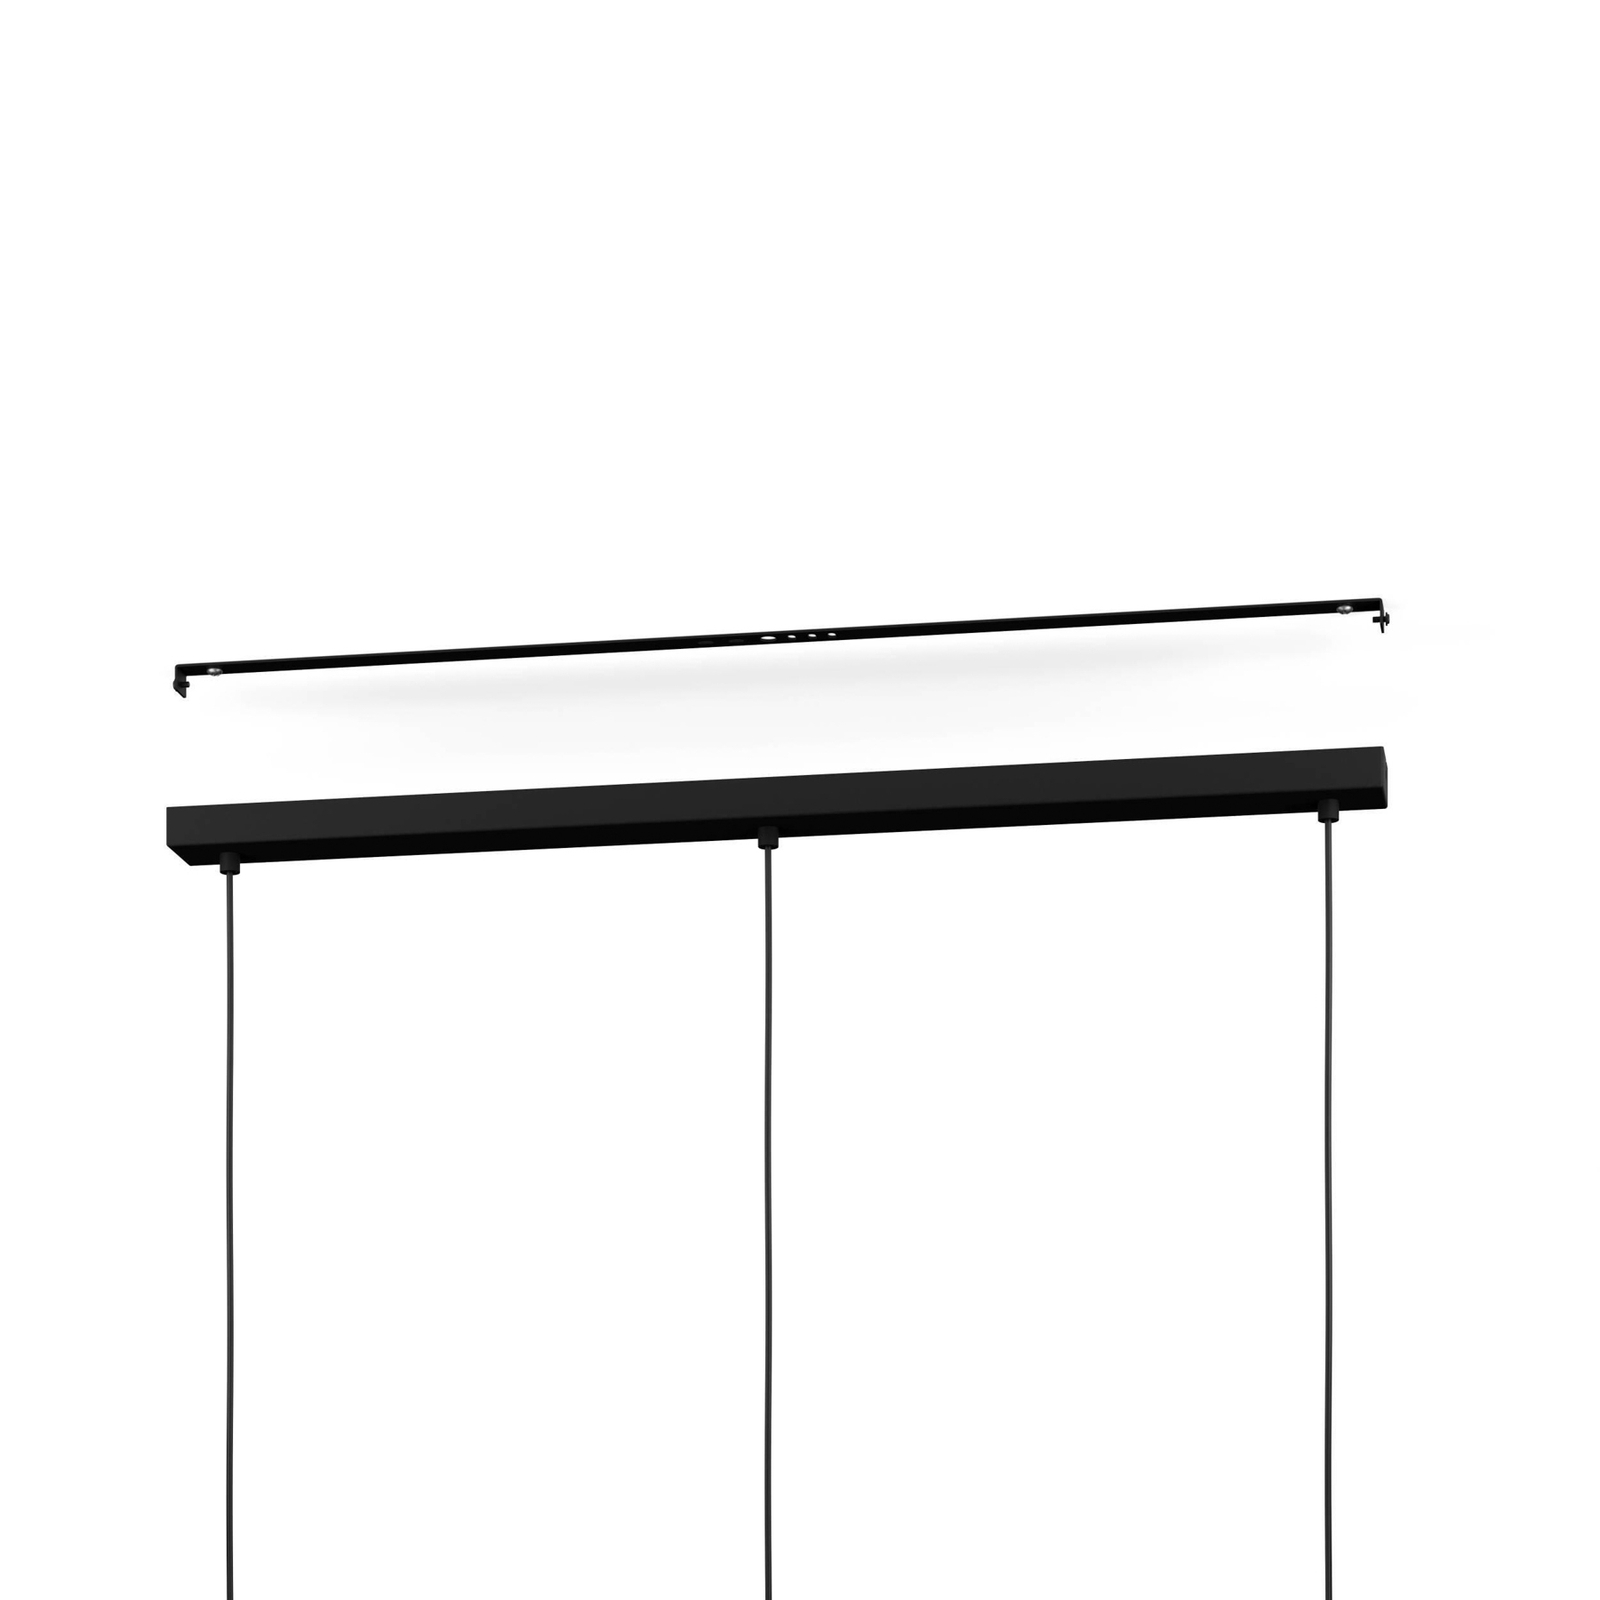 Matlock hanglamp, lengte 90 cm, grijs/zwart, 3-lamps.